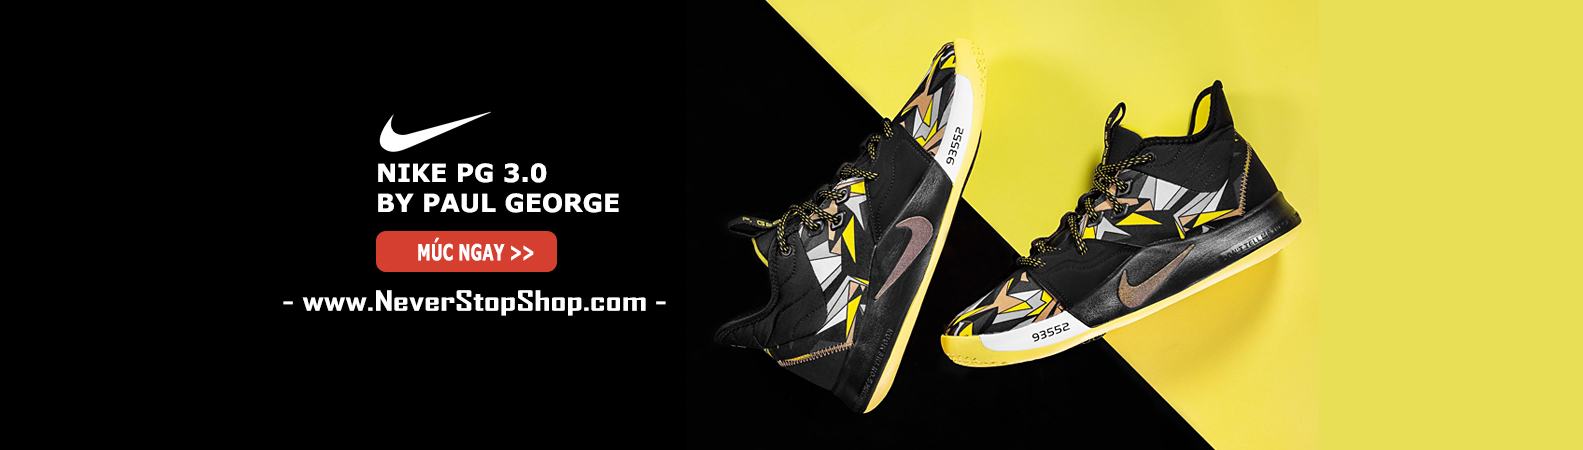 Giày Nike PG 3.0 bóng rổ cổ cao nam sfake replica giá rẻ tốt nhất HCM NeverStopShop